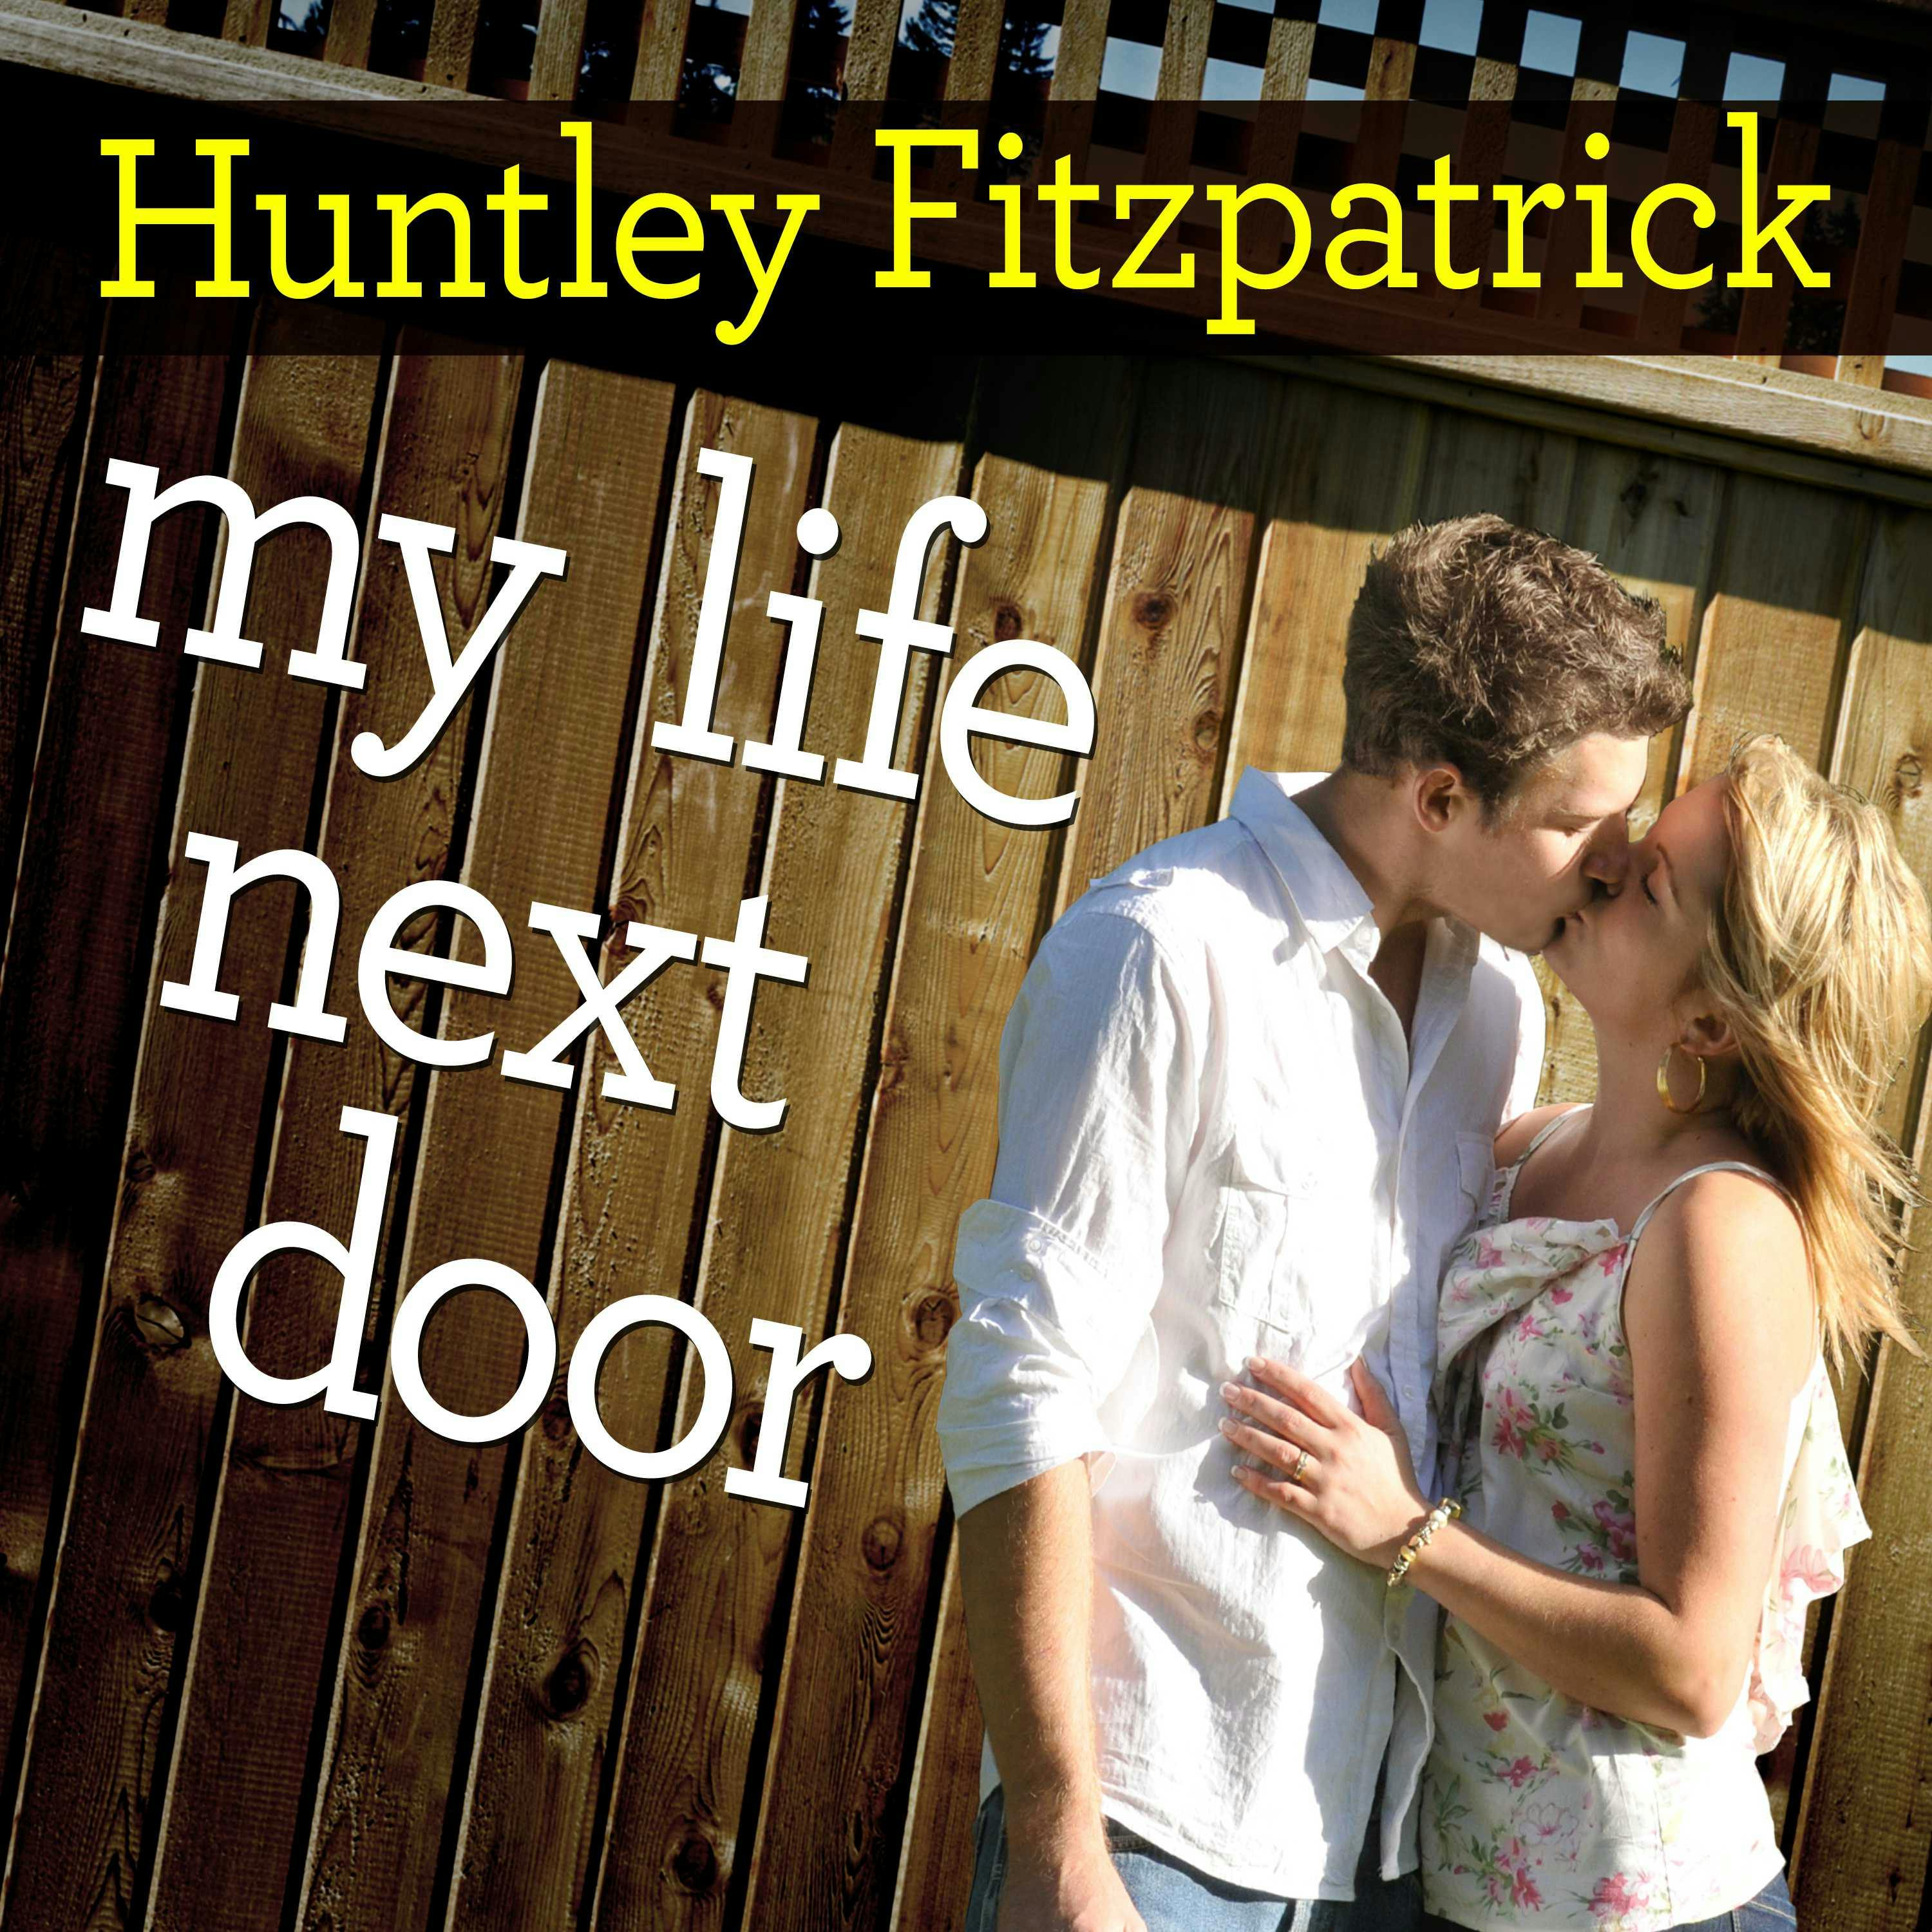 My Life Next Door - Huntley Fitzpatrick